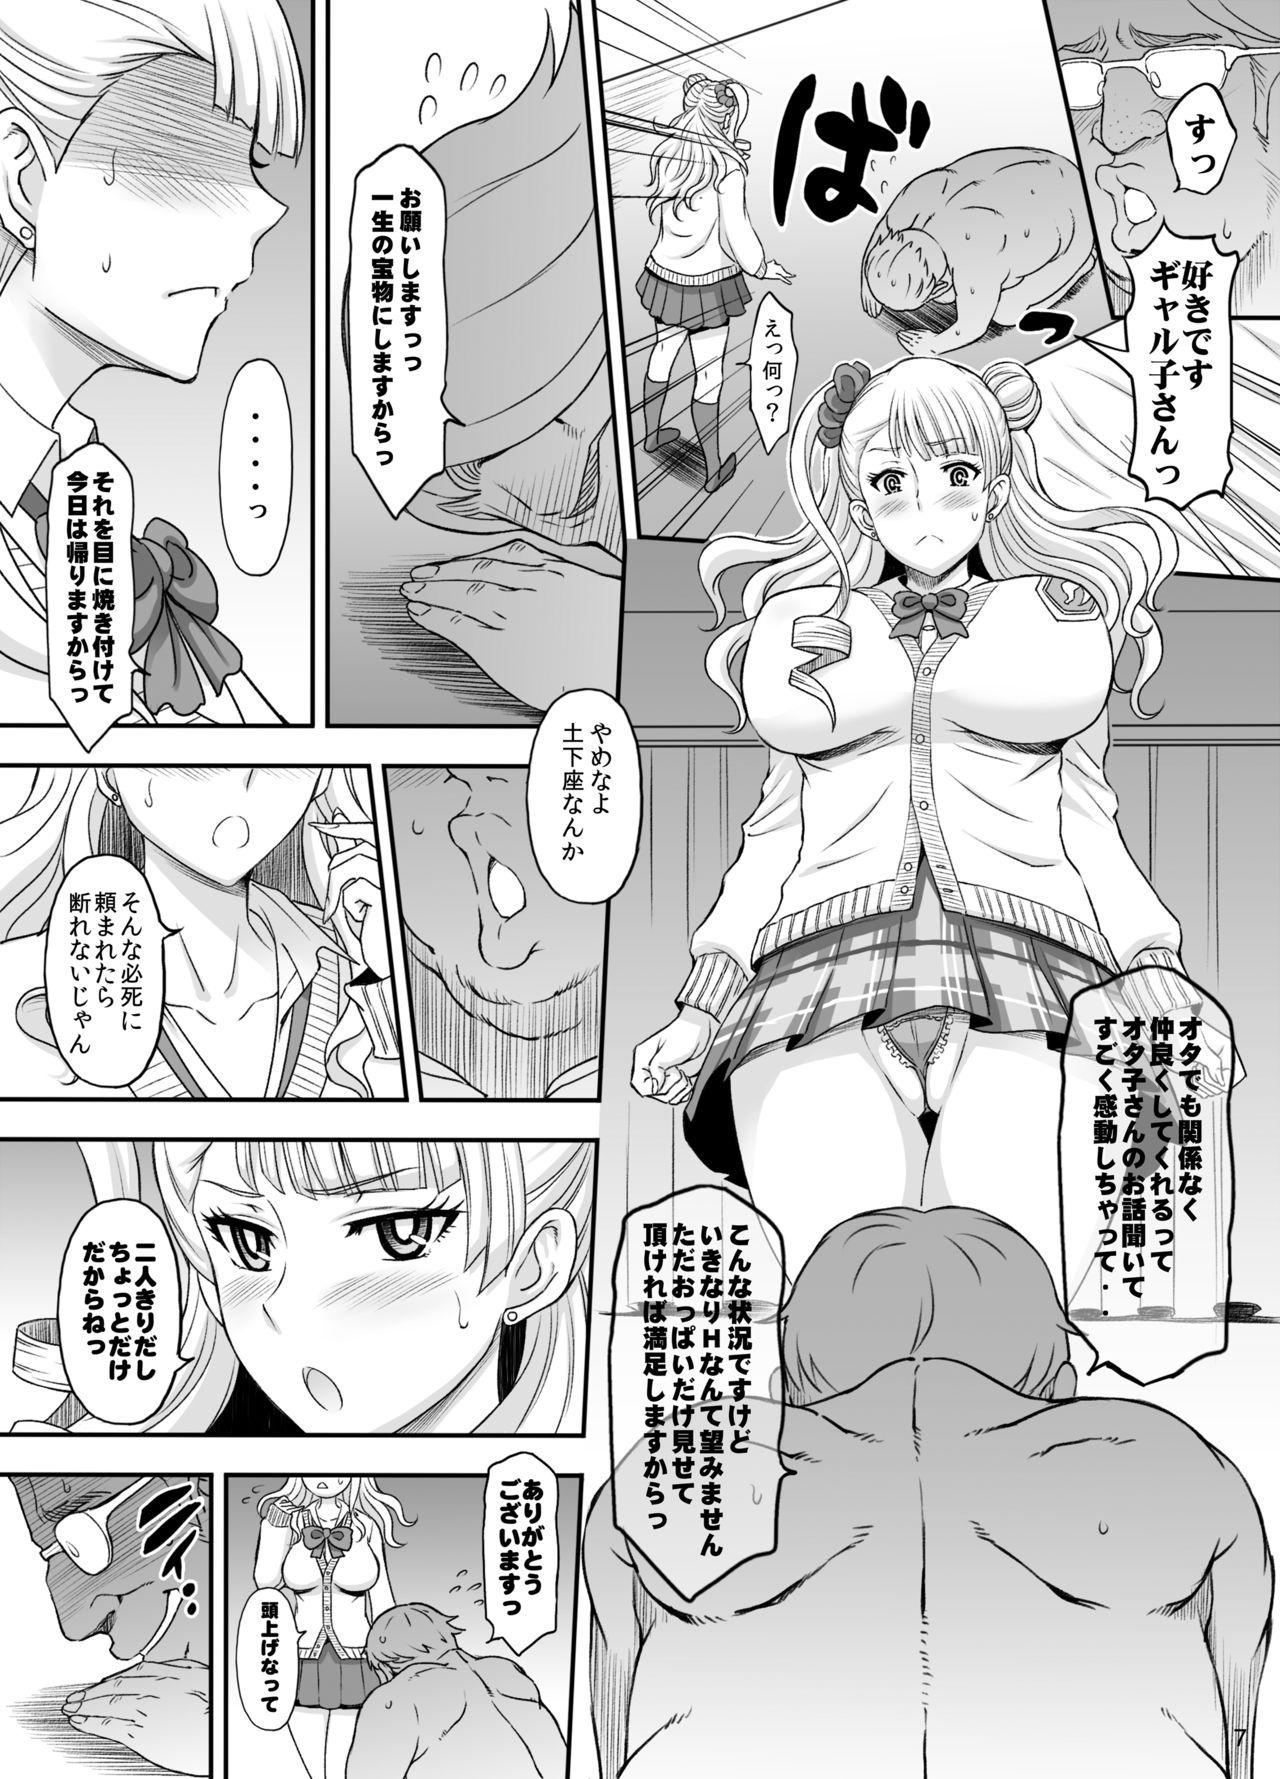 Tugging ○○○ shite! Galko-chan - Oshiete galko-chan Kink - Page 6